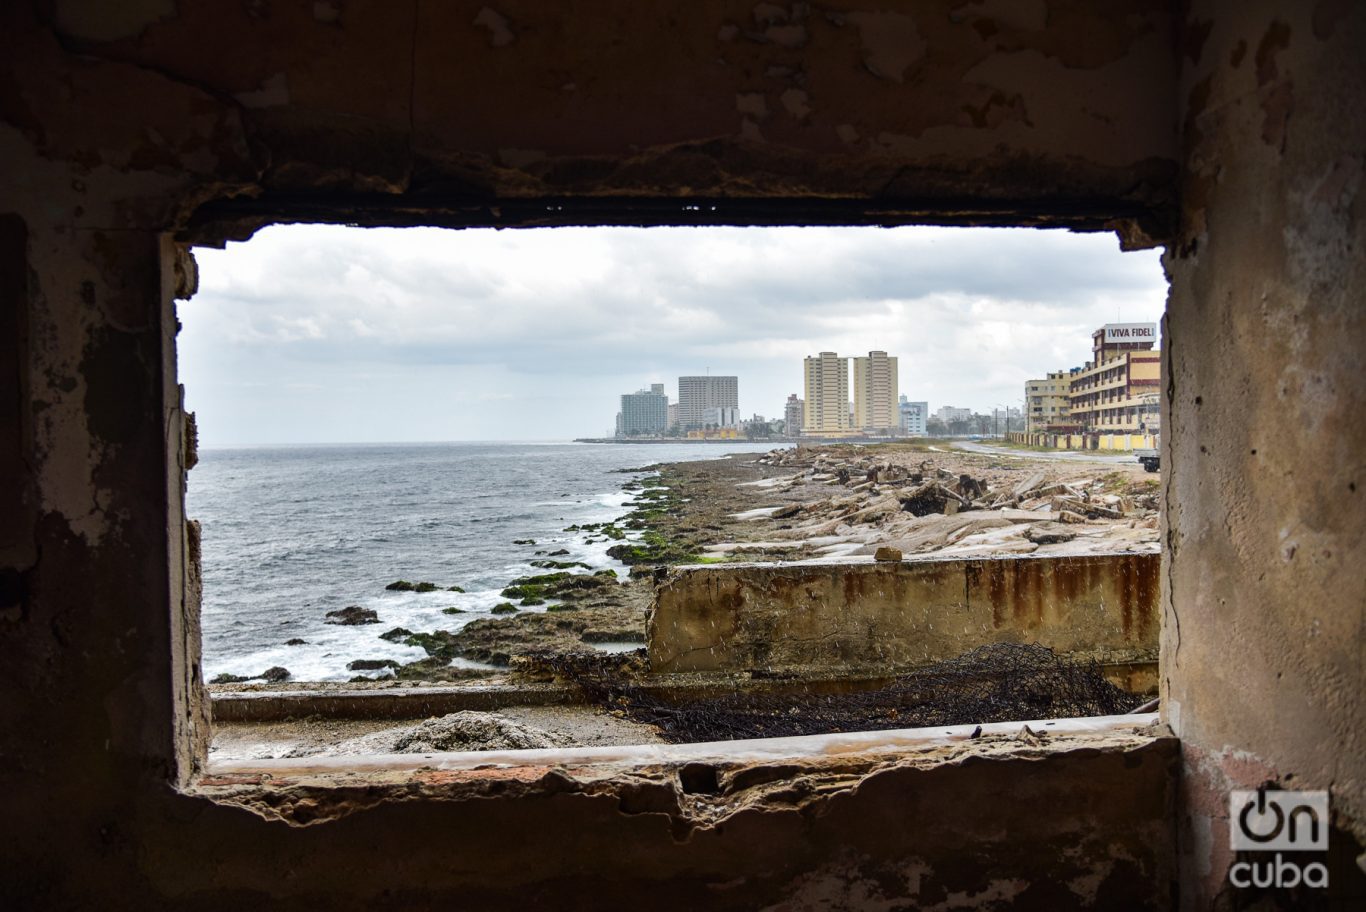 Vista de la ciudad desde una de las ventanas de los apartamentos abandonados de Riomar. Foto: Kaloian.